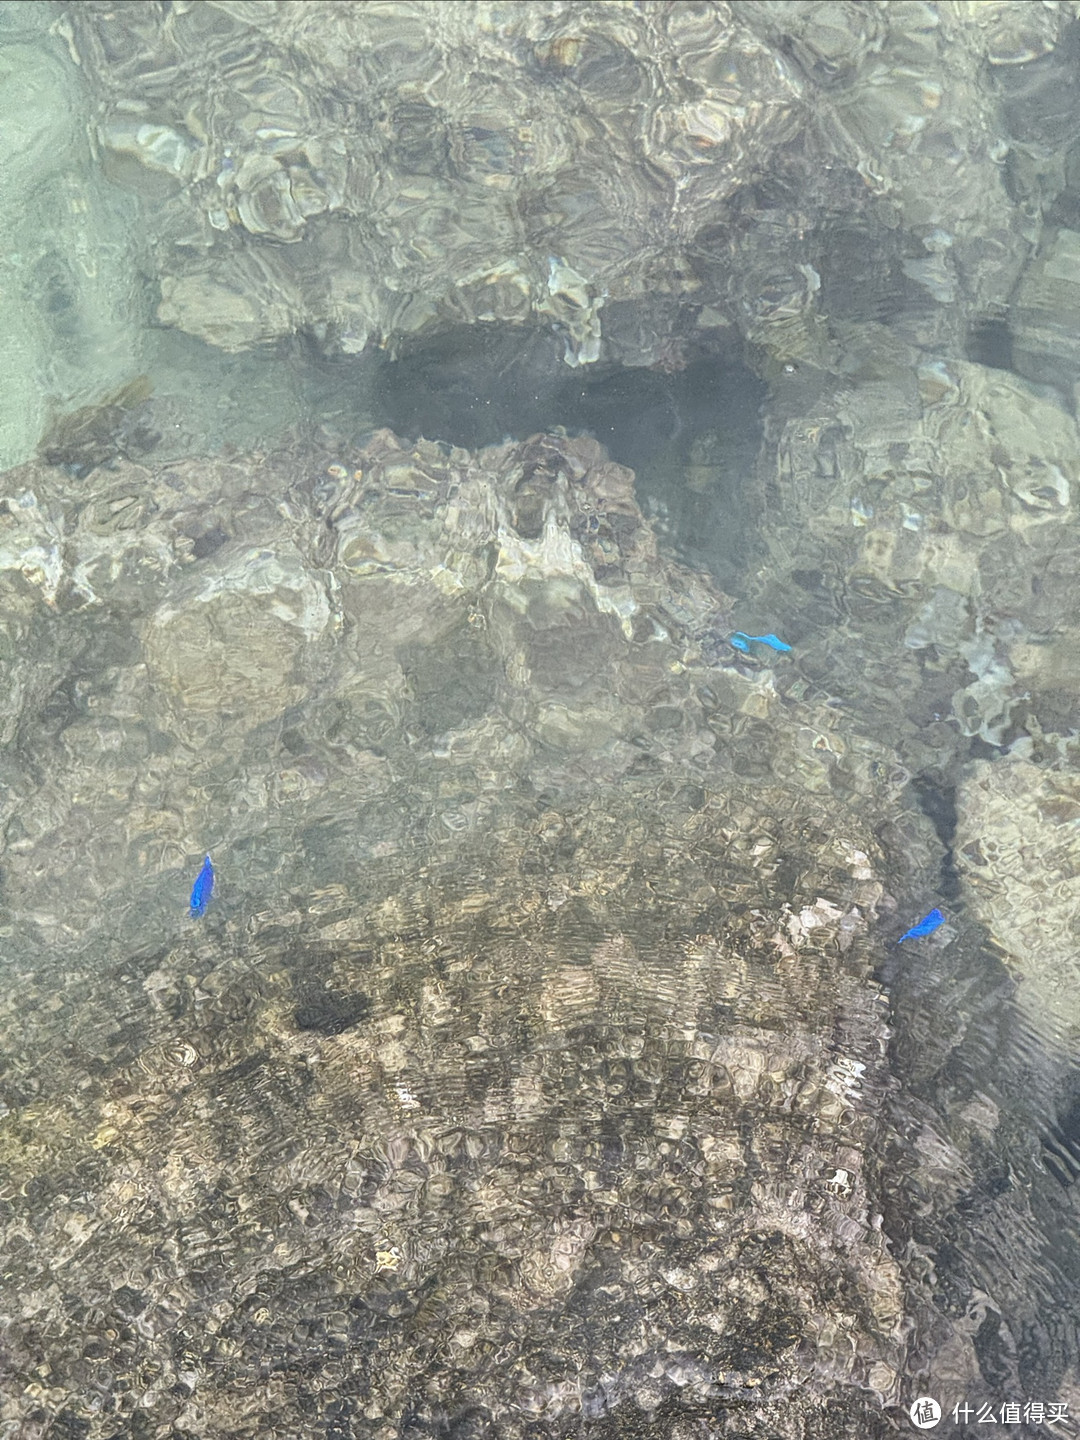 在海堤上能看到荧光蓝的小鱼